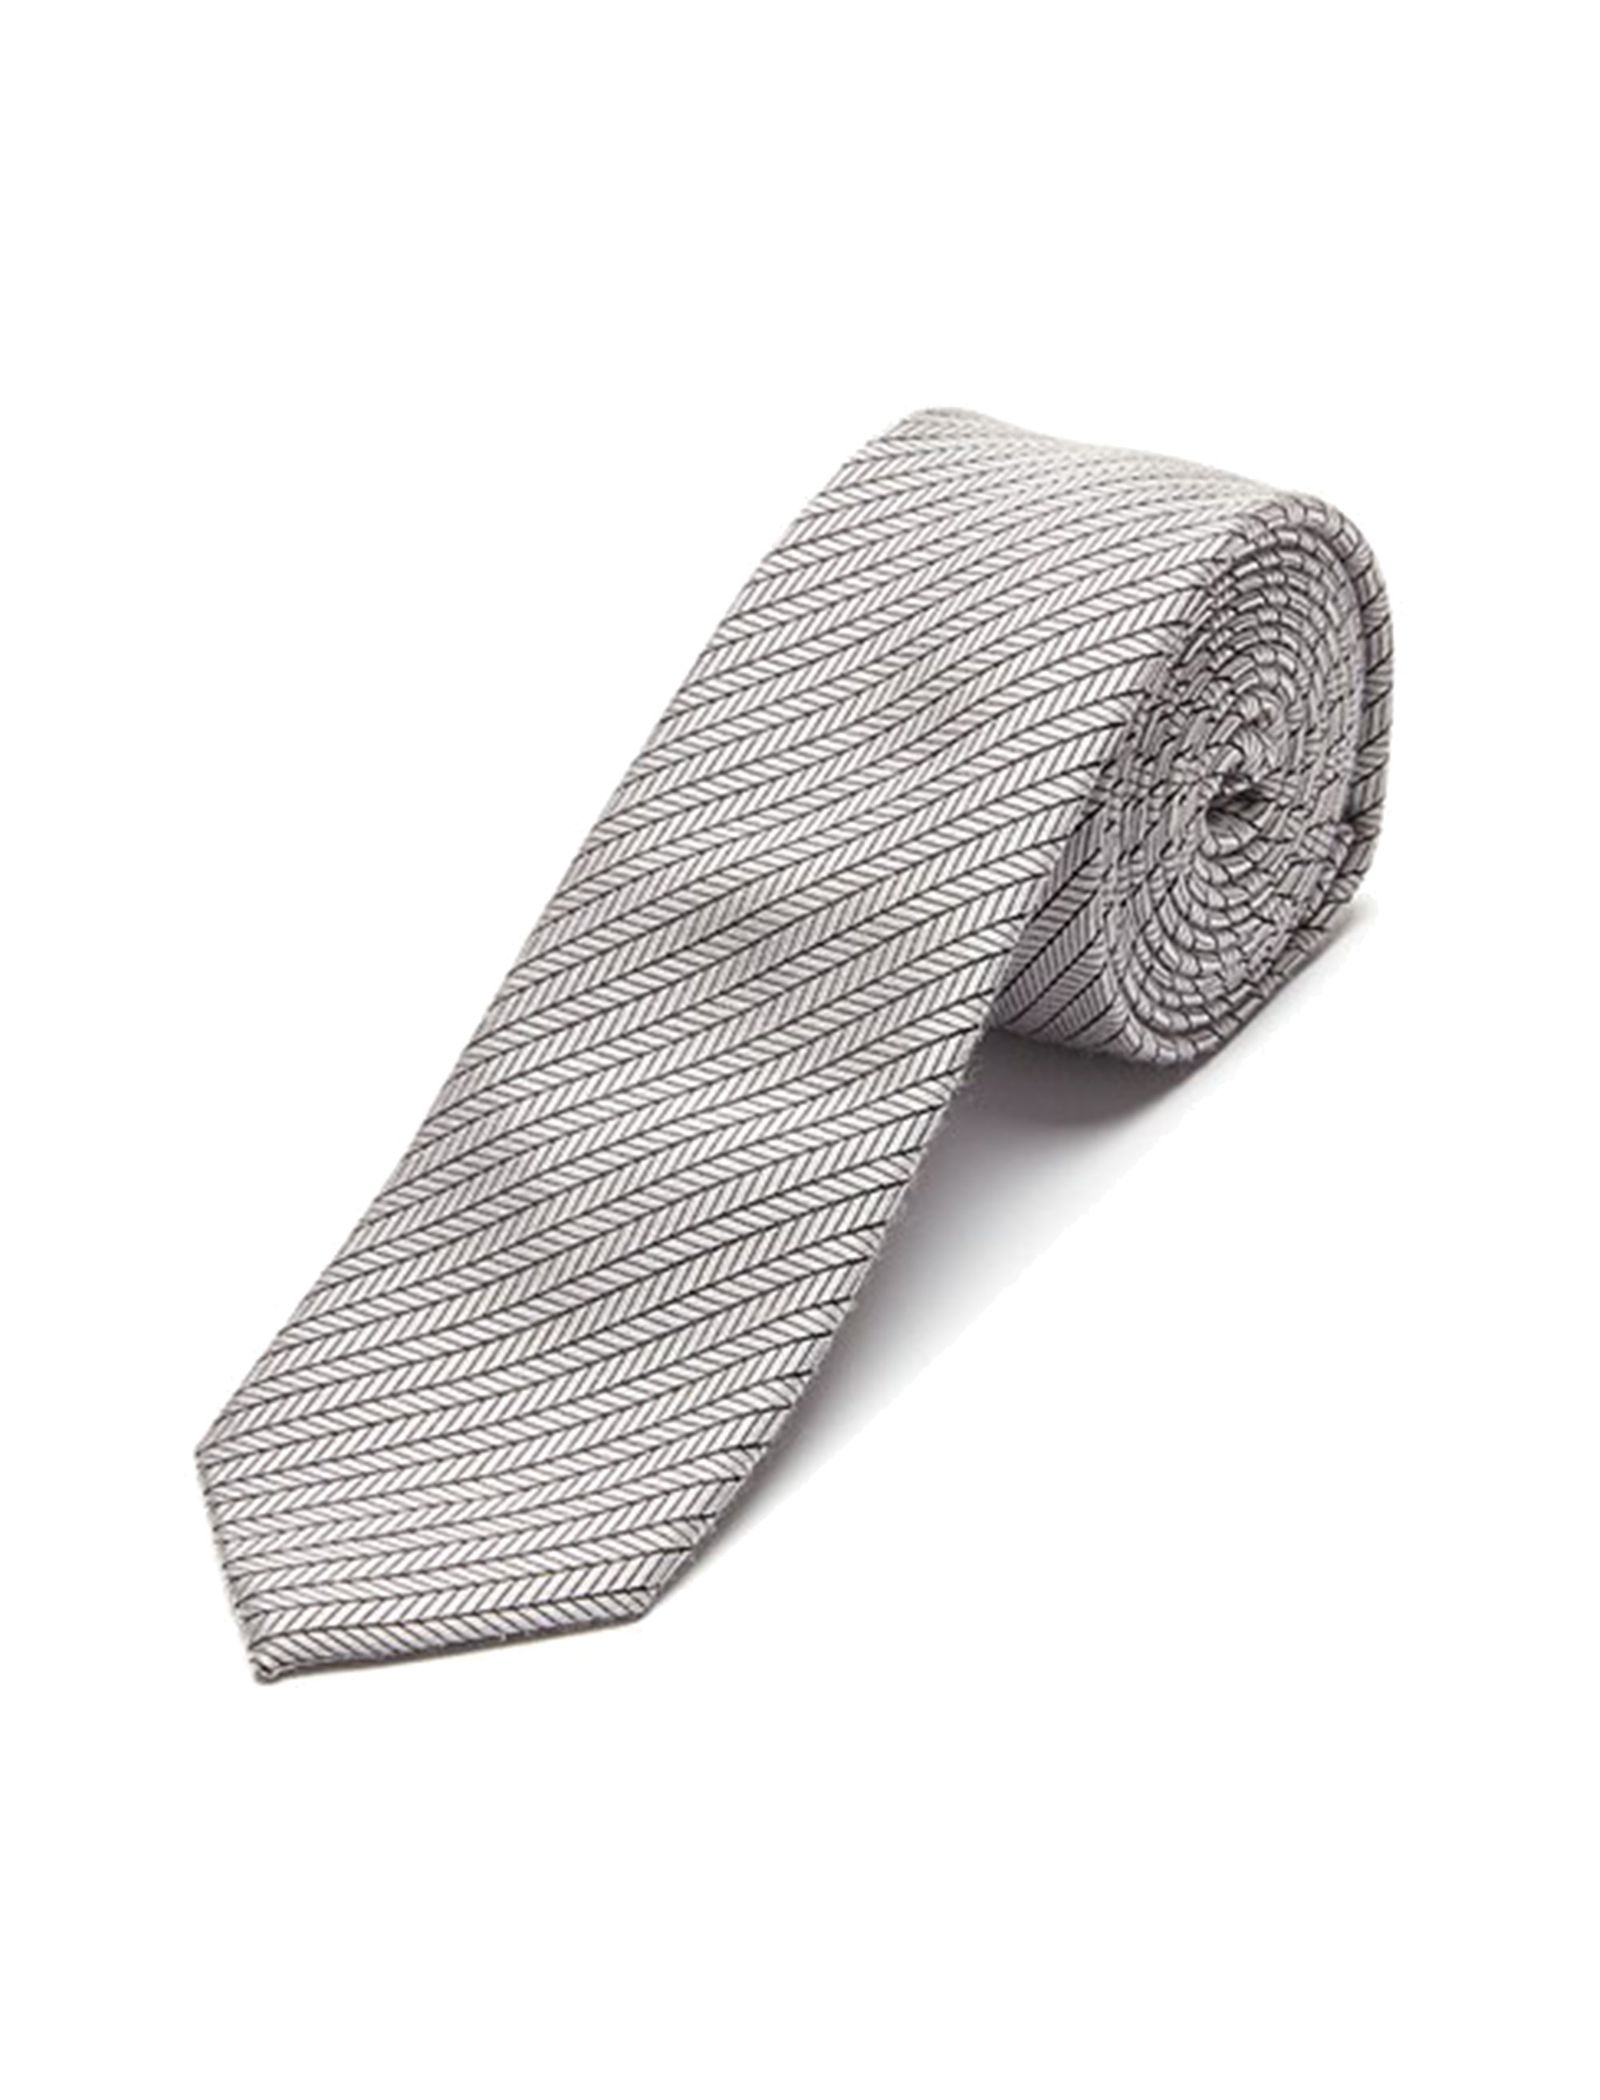 کراوات طرح دار مردانه - سلکتد - نقره اي - 4